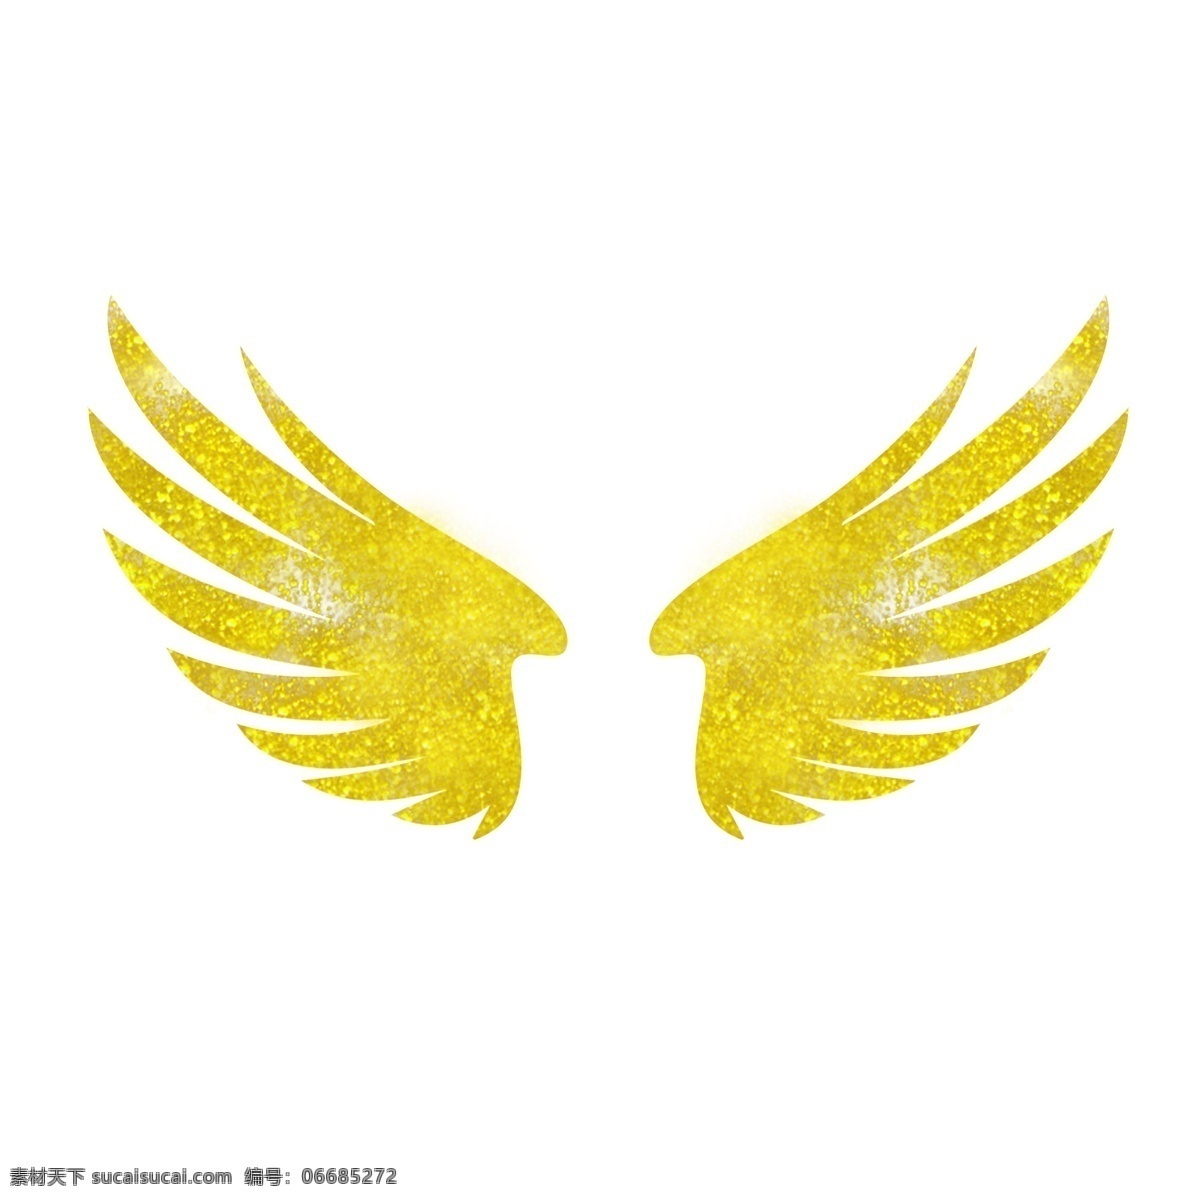 翅膀元素 翅膀 翅膀素材 金色翅膀 金色元素 金色素材 金属元素 金属素材 金属装饰 飞翔 飞翔元素 飞翔素材 飞翔装饰 卡通飞翔 卡通翅膀 卡通元素 卡通素材 元素设计 分层